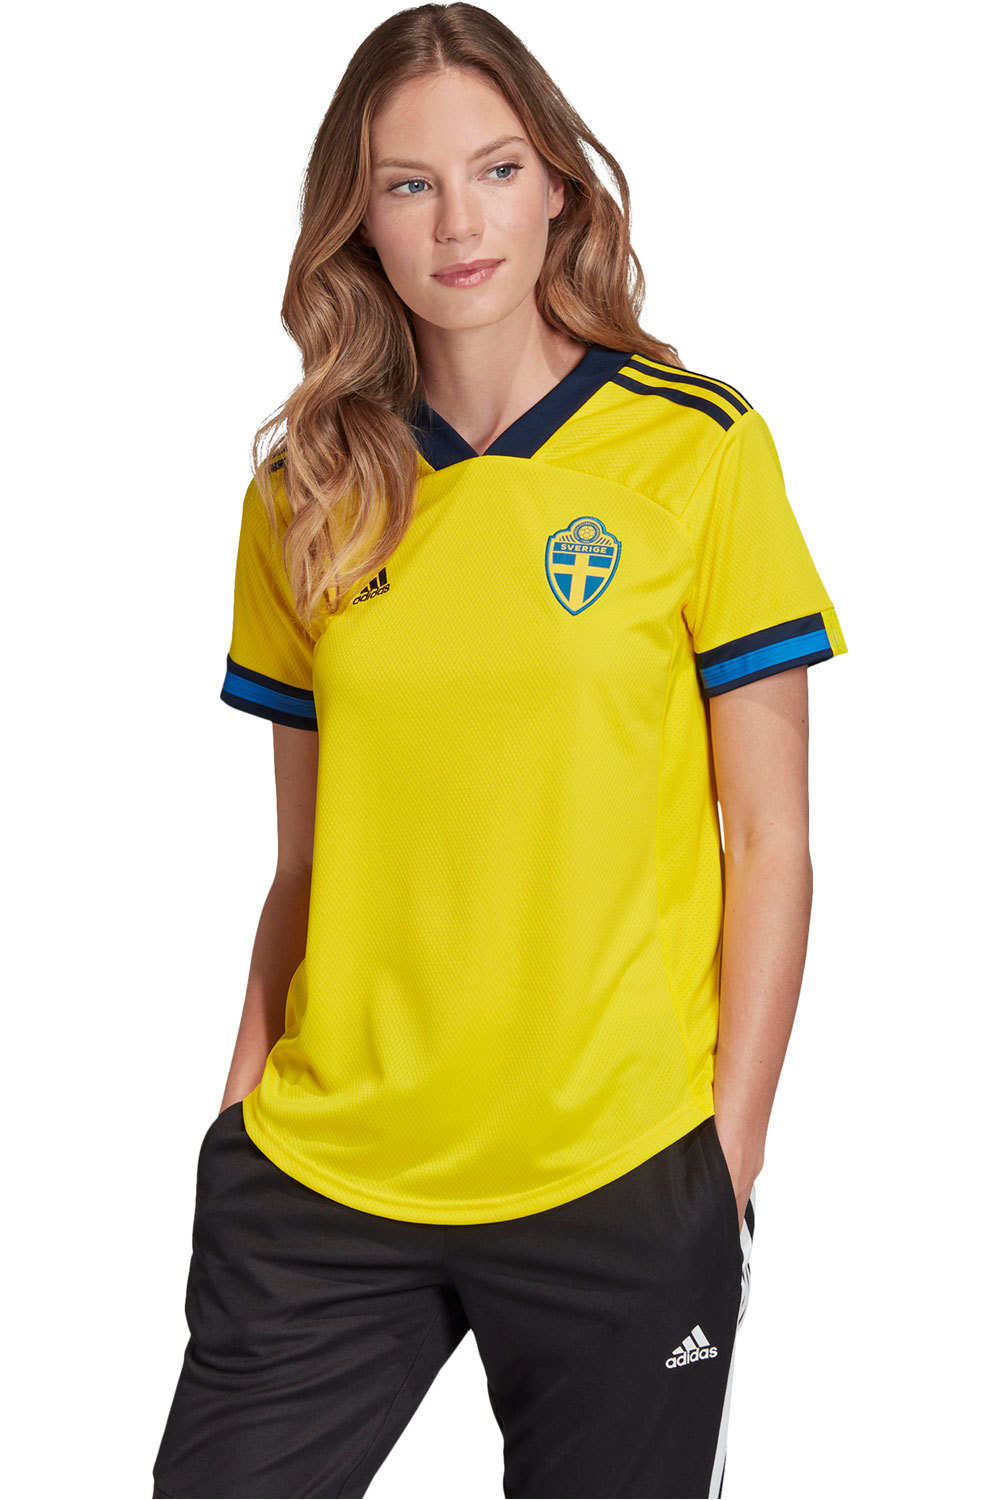 Camiseta de fútbol oficiales suecia 21 w h jsy